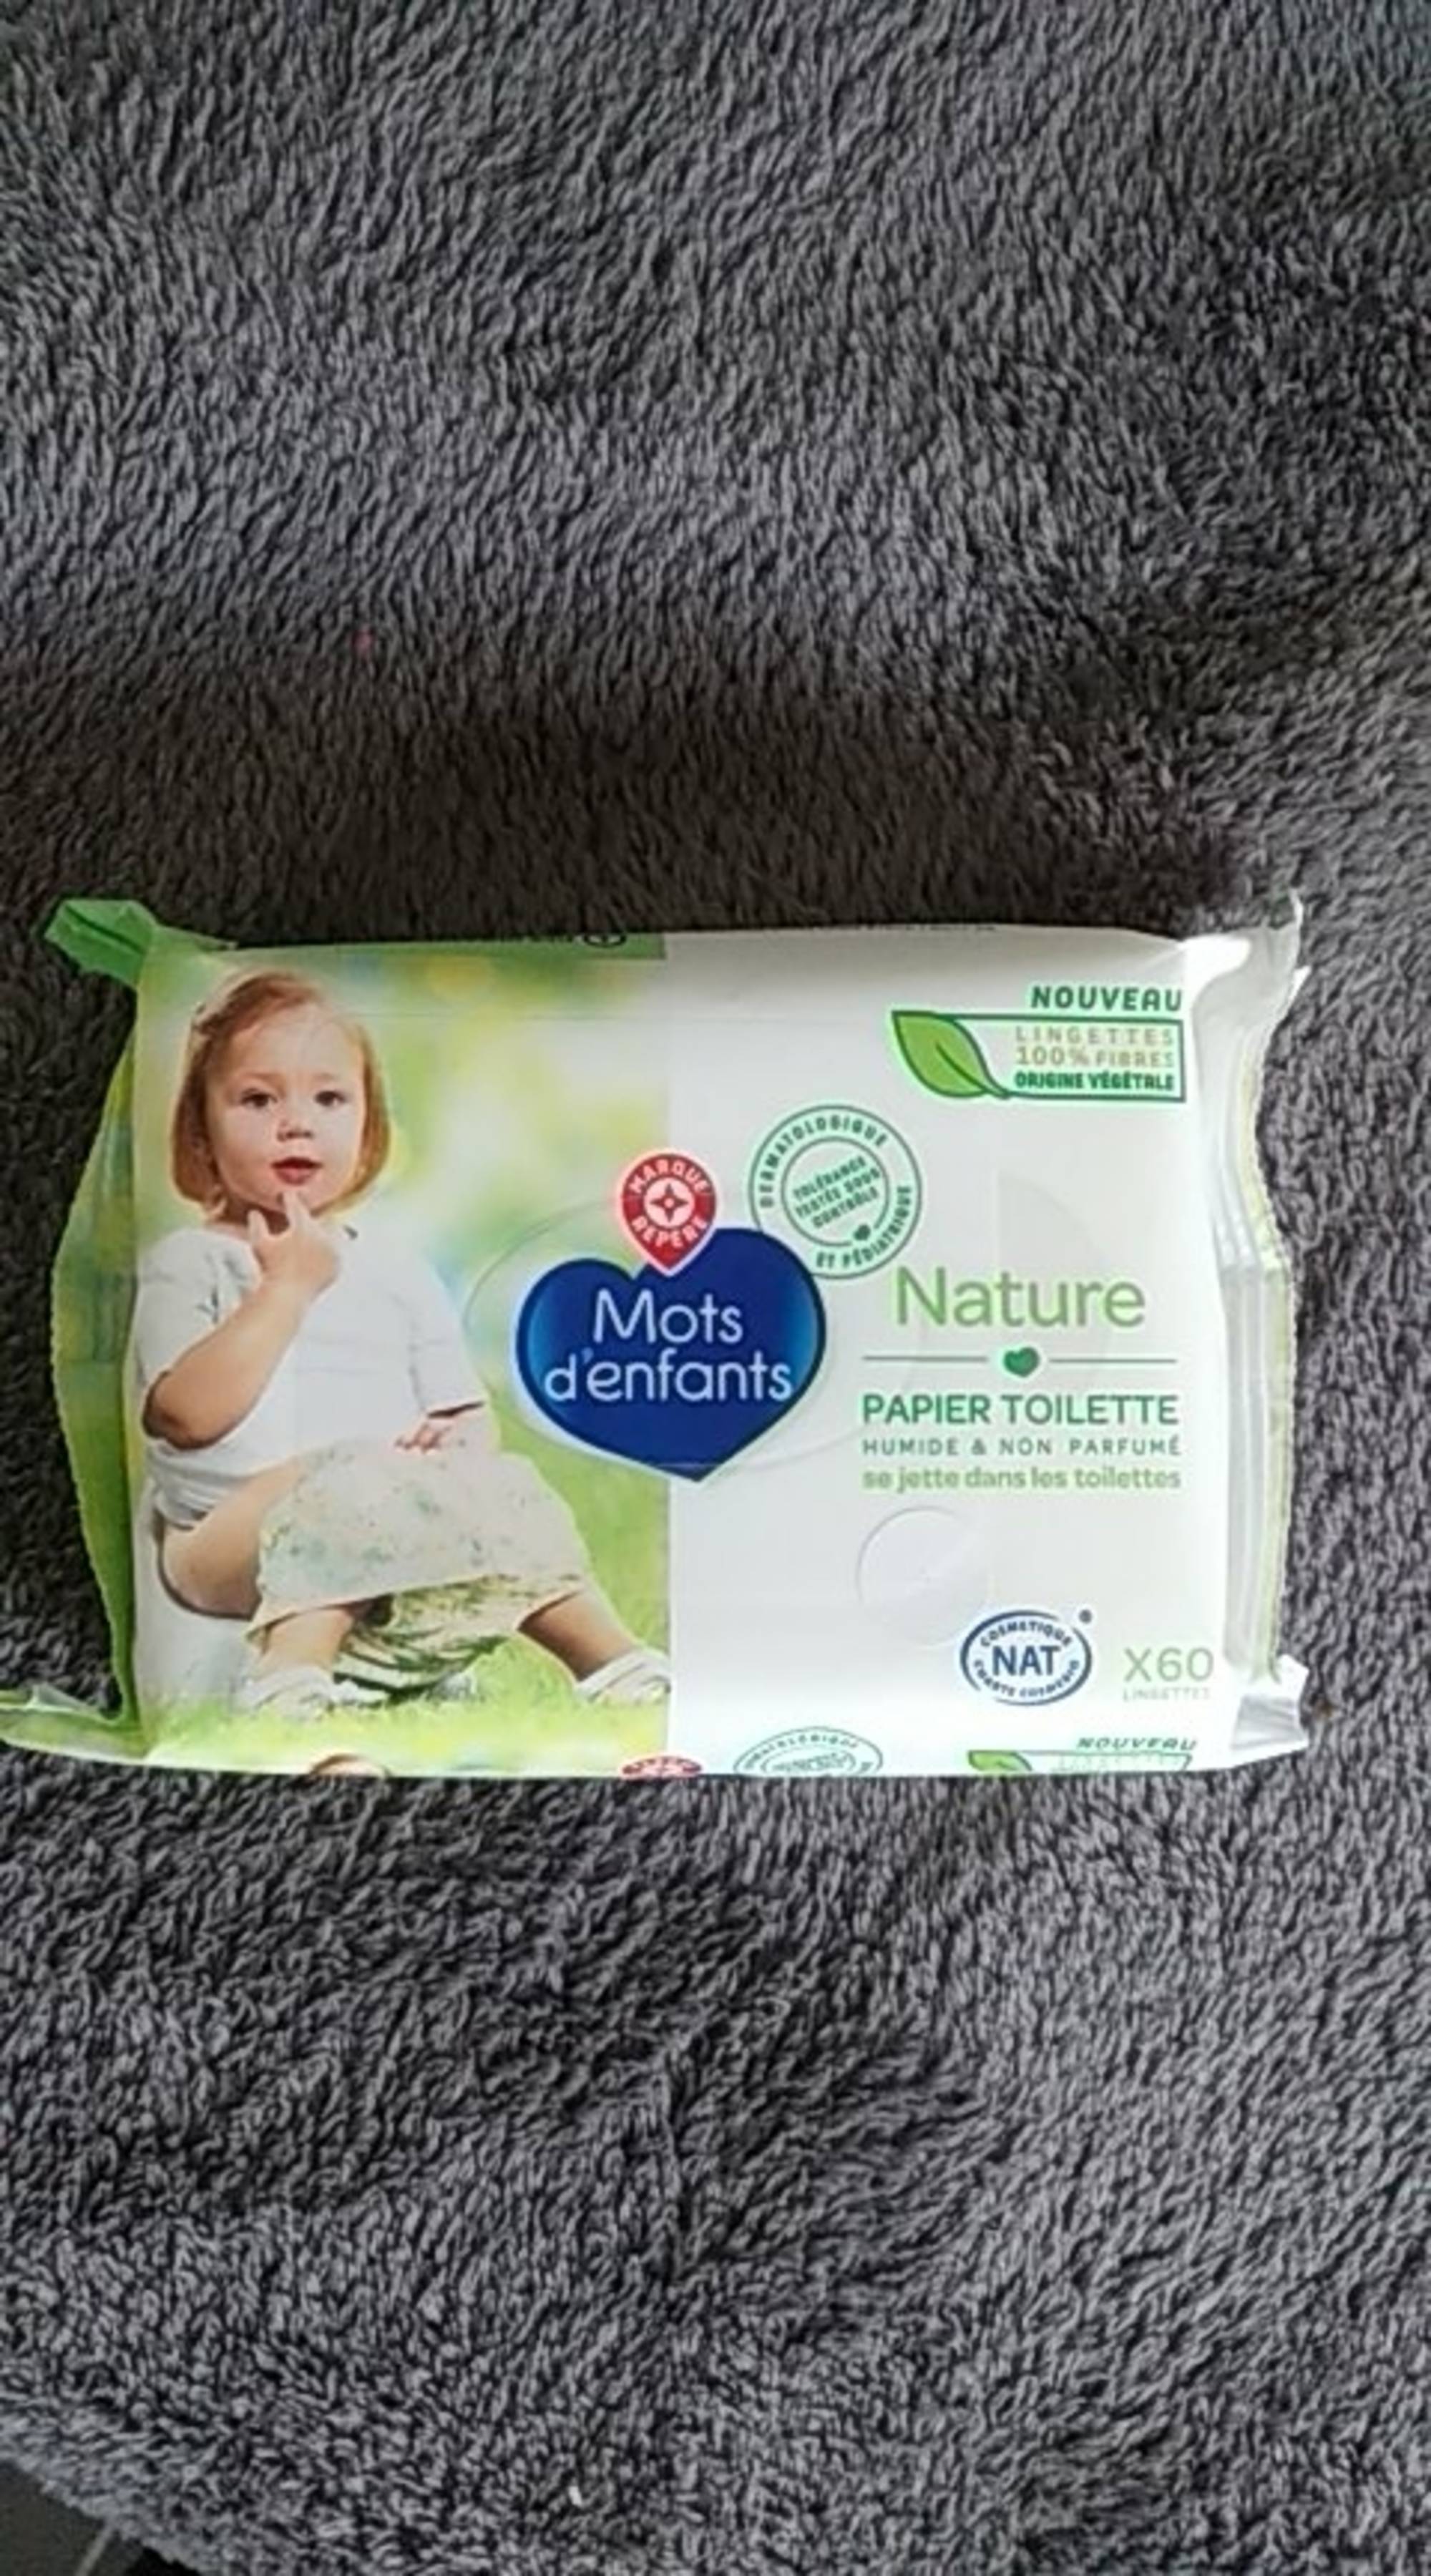 MARQUE REPÈRE - Mots d'enfants nature - Papier toilette humide & non parfumé